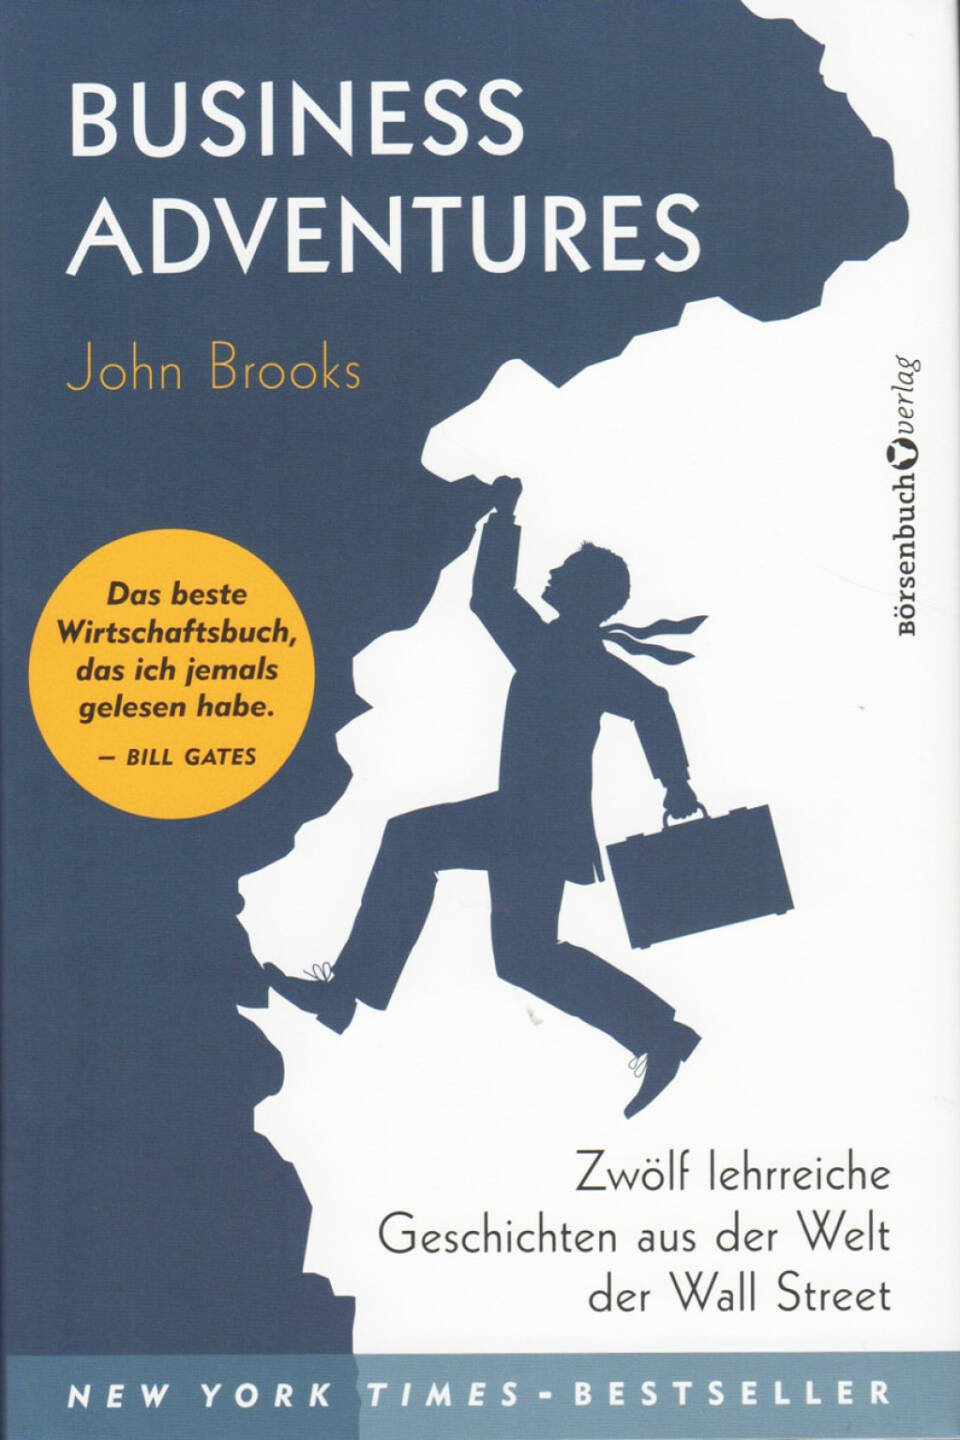 John Brooks - Business Adventures: Zwölf lehrreiche Geschichten aus der Welt der Wall Street - http://boerse-social.com/financebooks/show/john_brooks_-_business_adventures_zwolf_lehrreiche_geschichten_aus_der_welt_der_wall_street